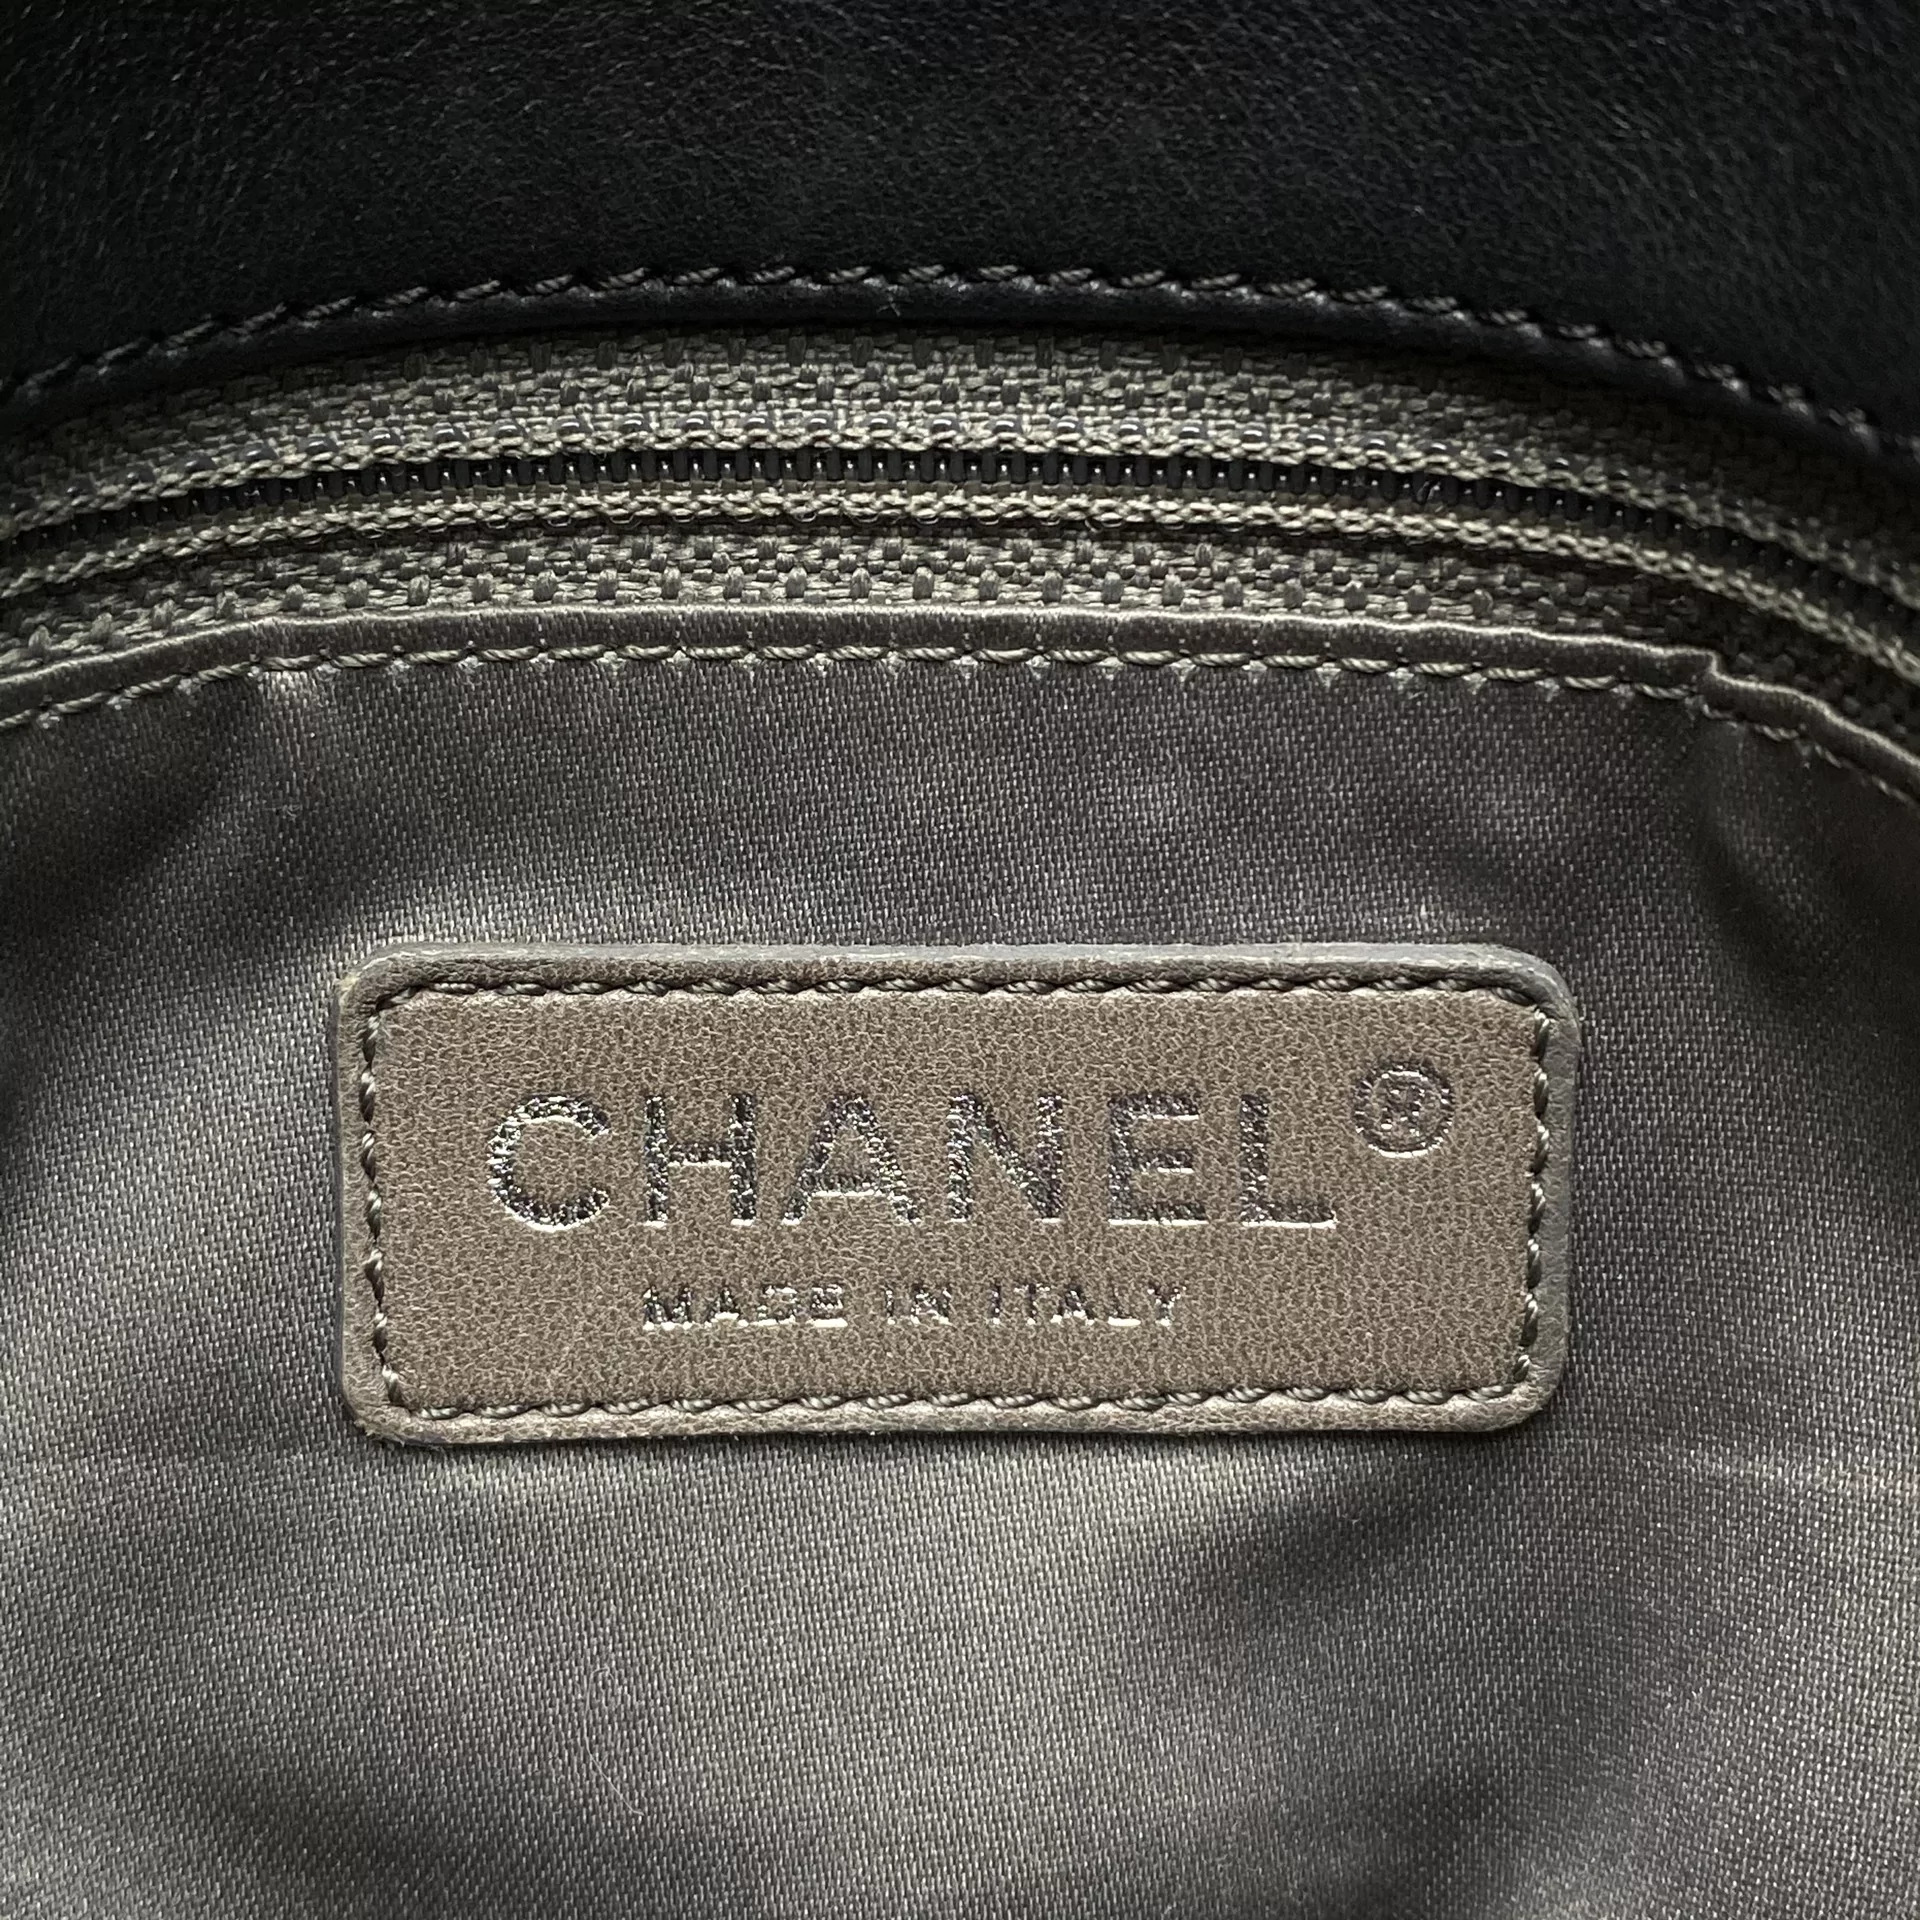 Bolsa Chanel Couro Preta